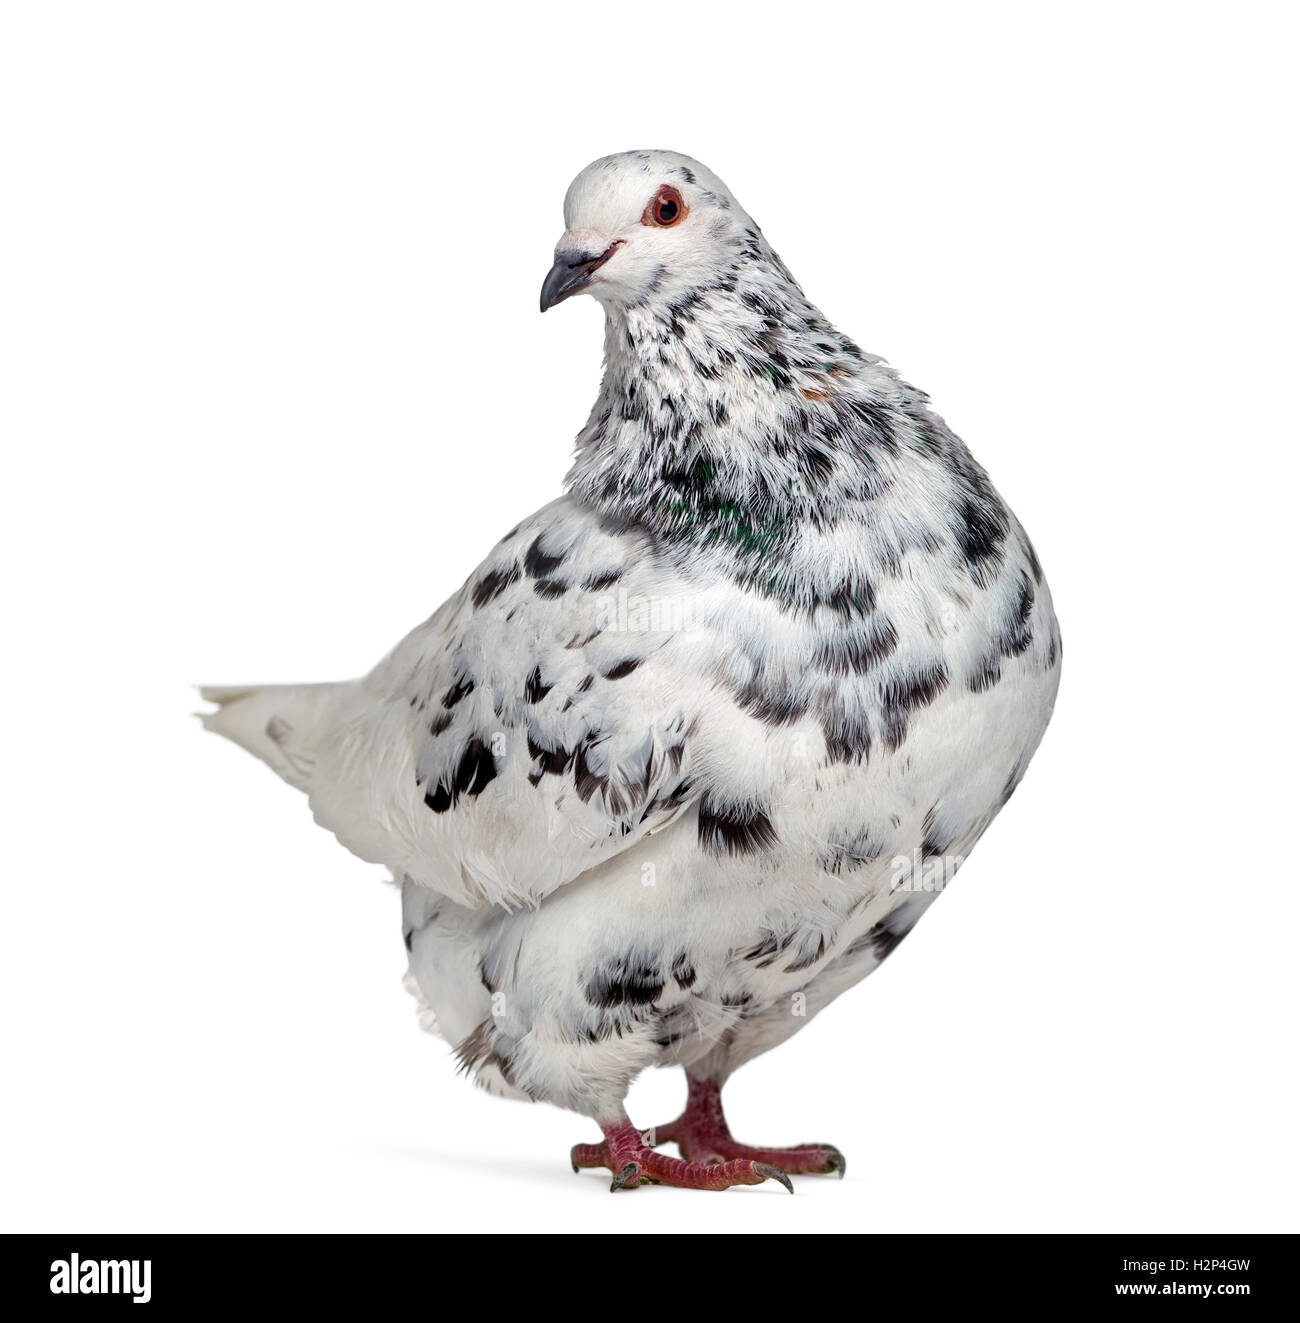 Vista lateral de un tejano pigeon interrogatorio aislado en blanco Foto de stock